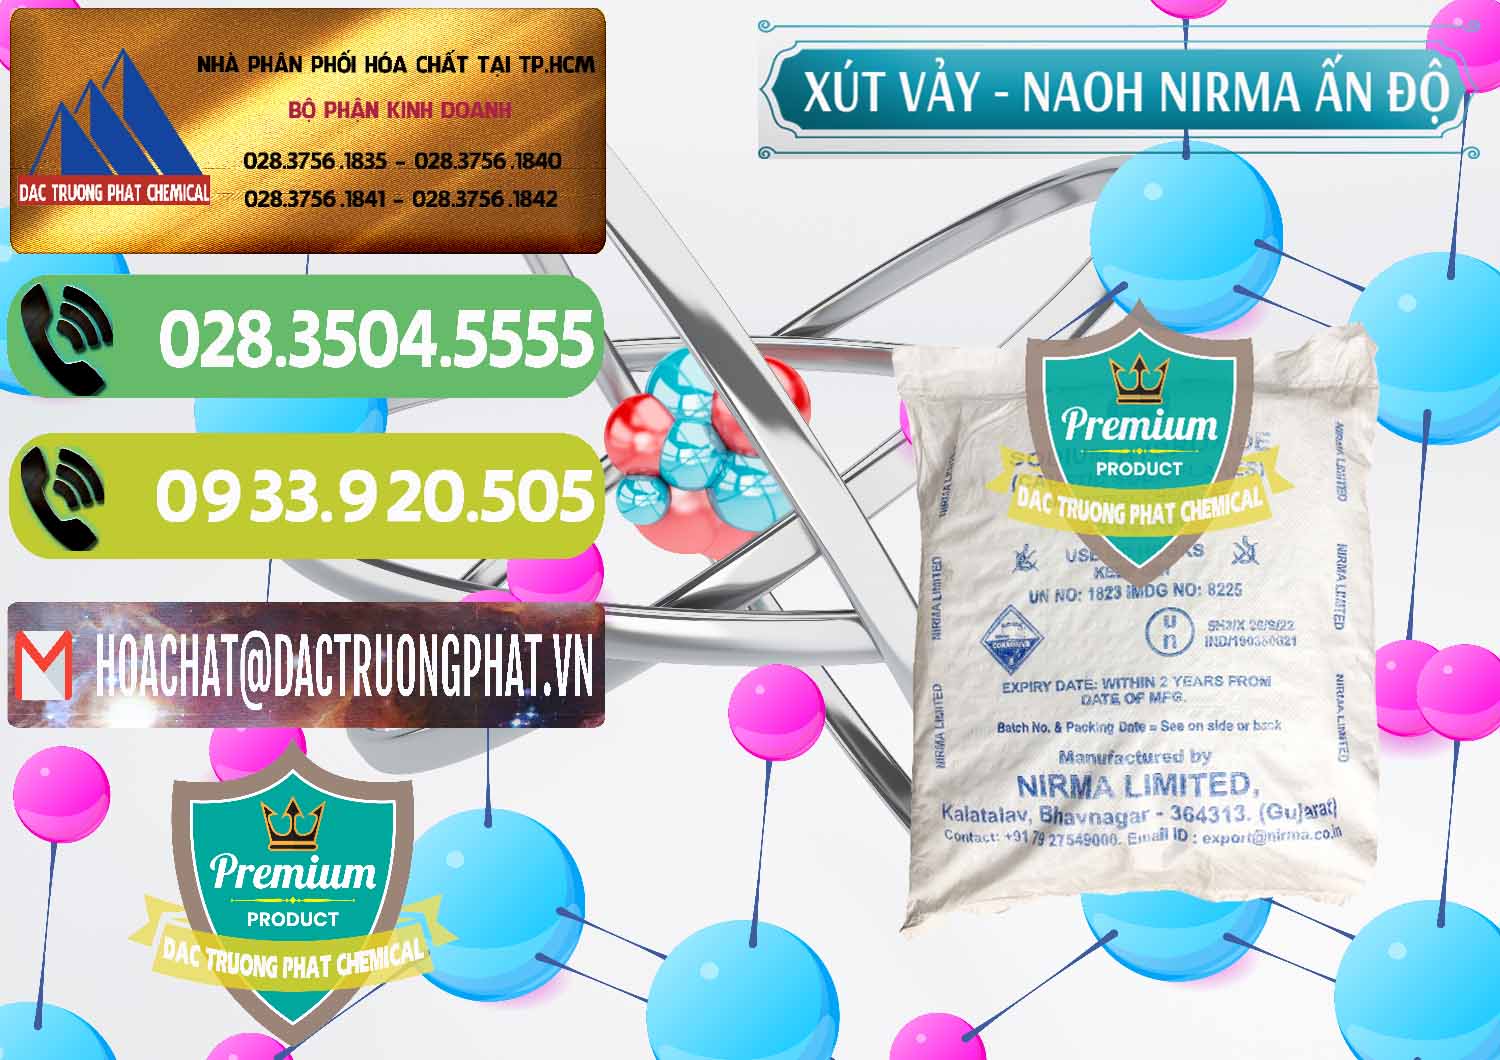 Cty bán và phân phối Xút Vảy - NaOH Vảy Nirma Ấn Độ India - 0371 - Cty phân phối & bán hóa chất tại TP.HCM - hoachatmientay.vn